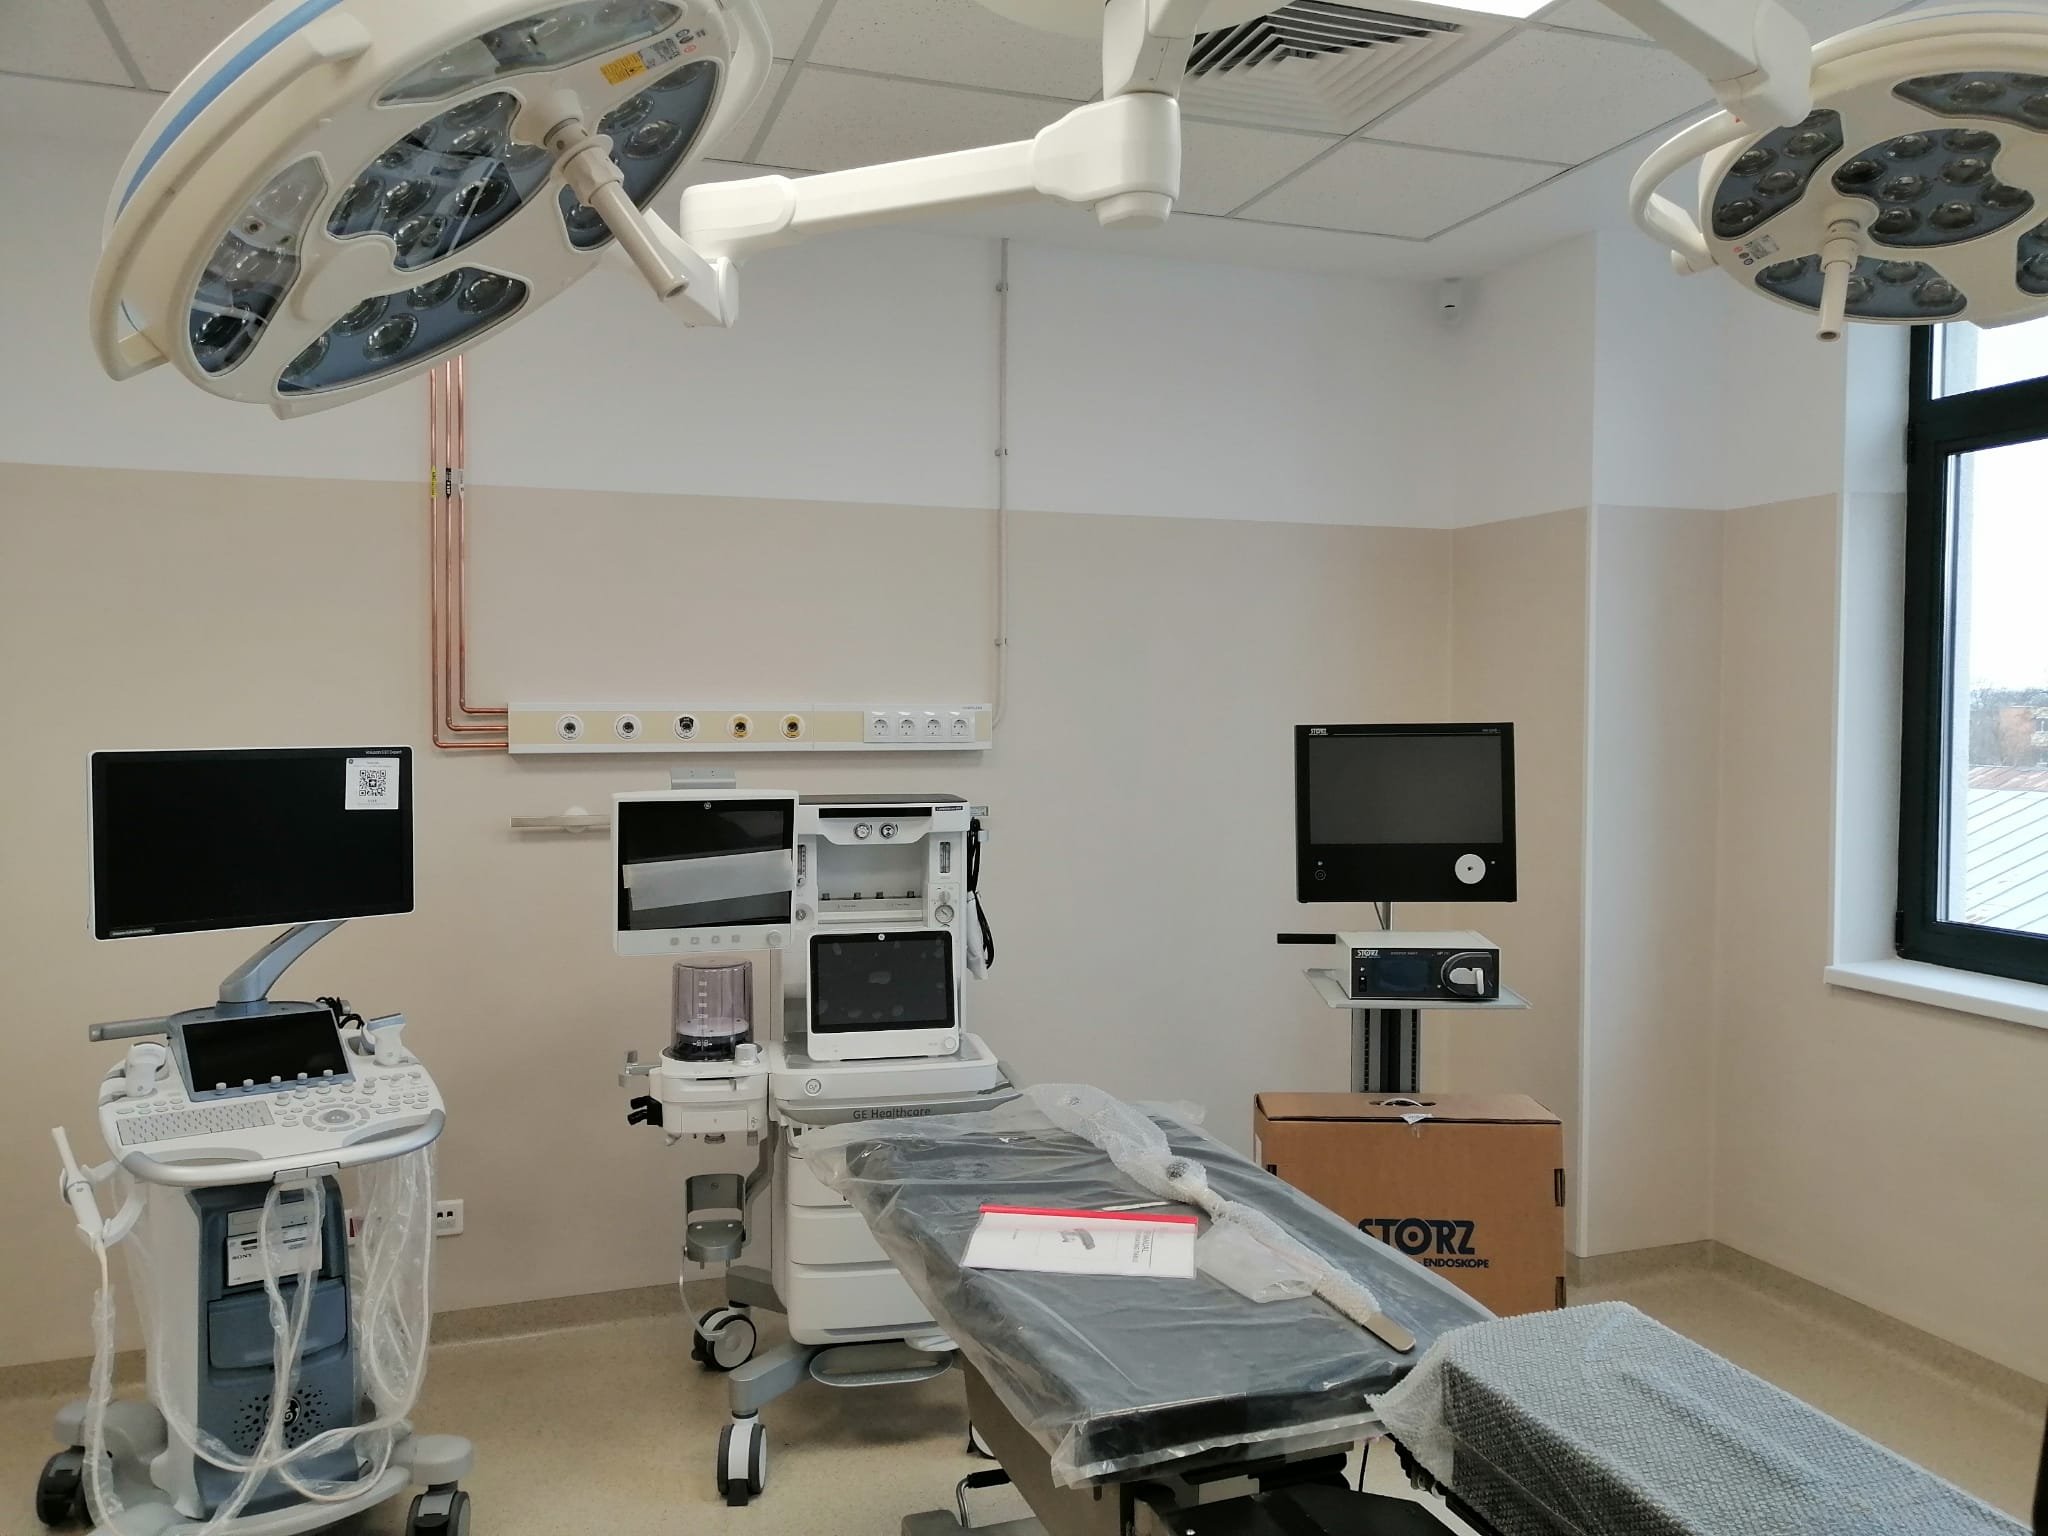  Centru de Screening și Diagnostic în Boli Oncologice inaugurat la Iași